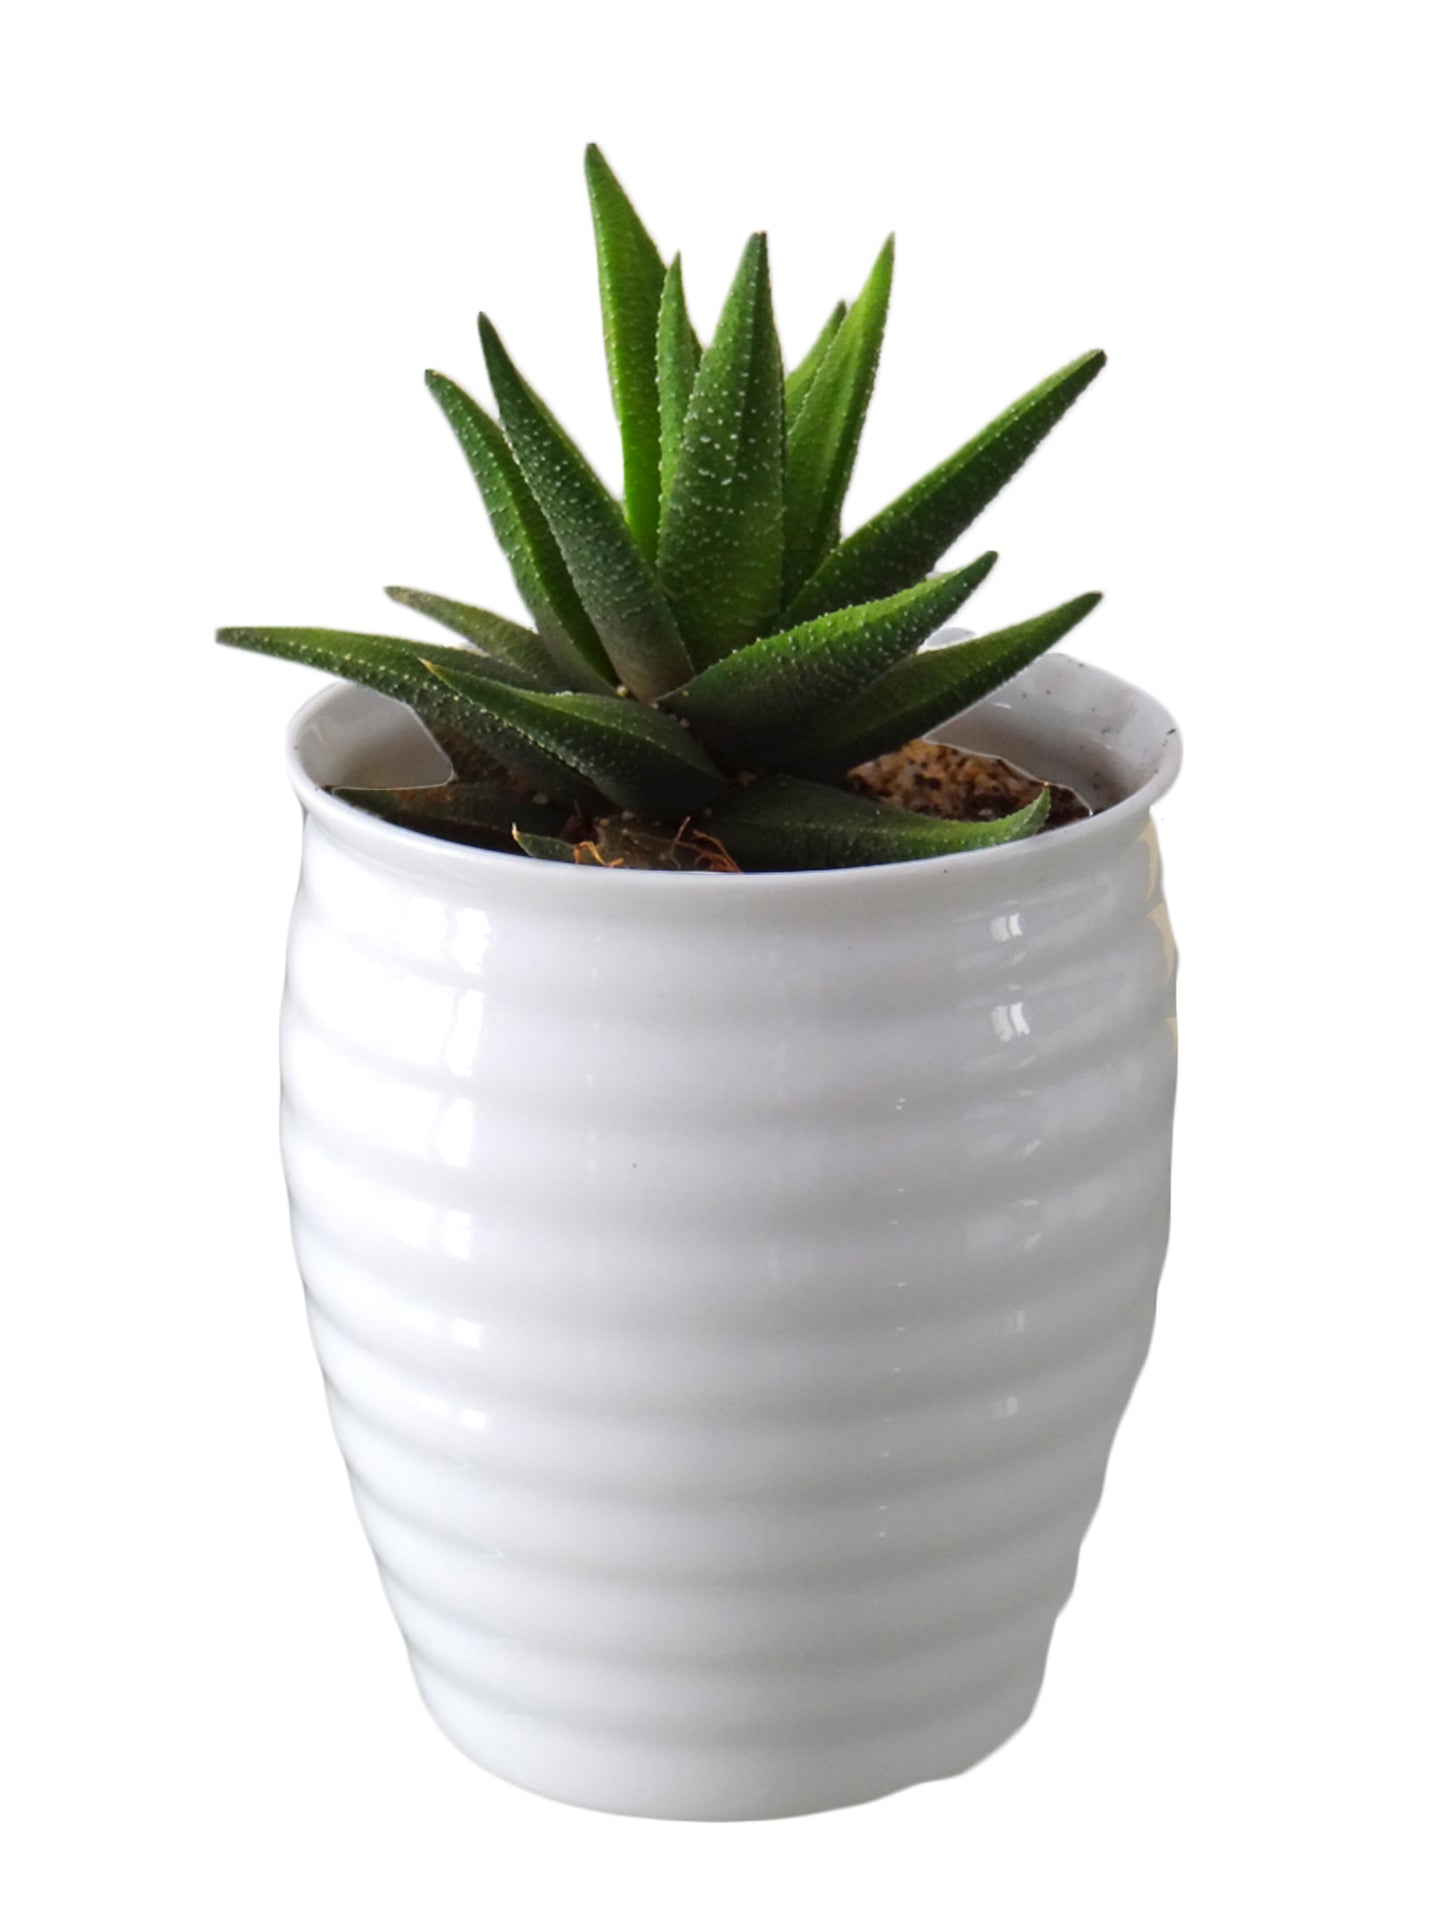 Haworthia Fasciata Succulent Plant in White Ceramic Pot